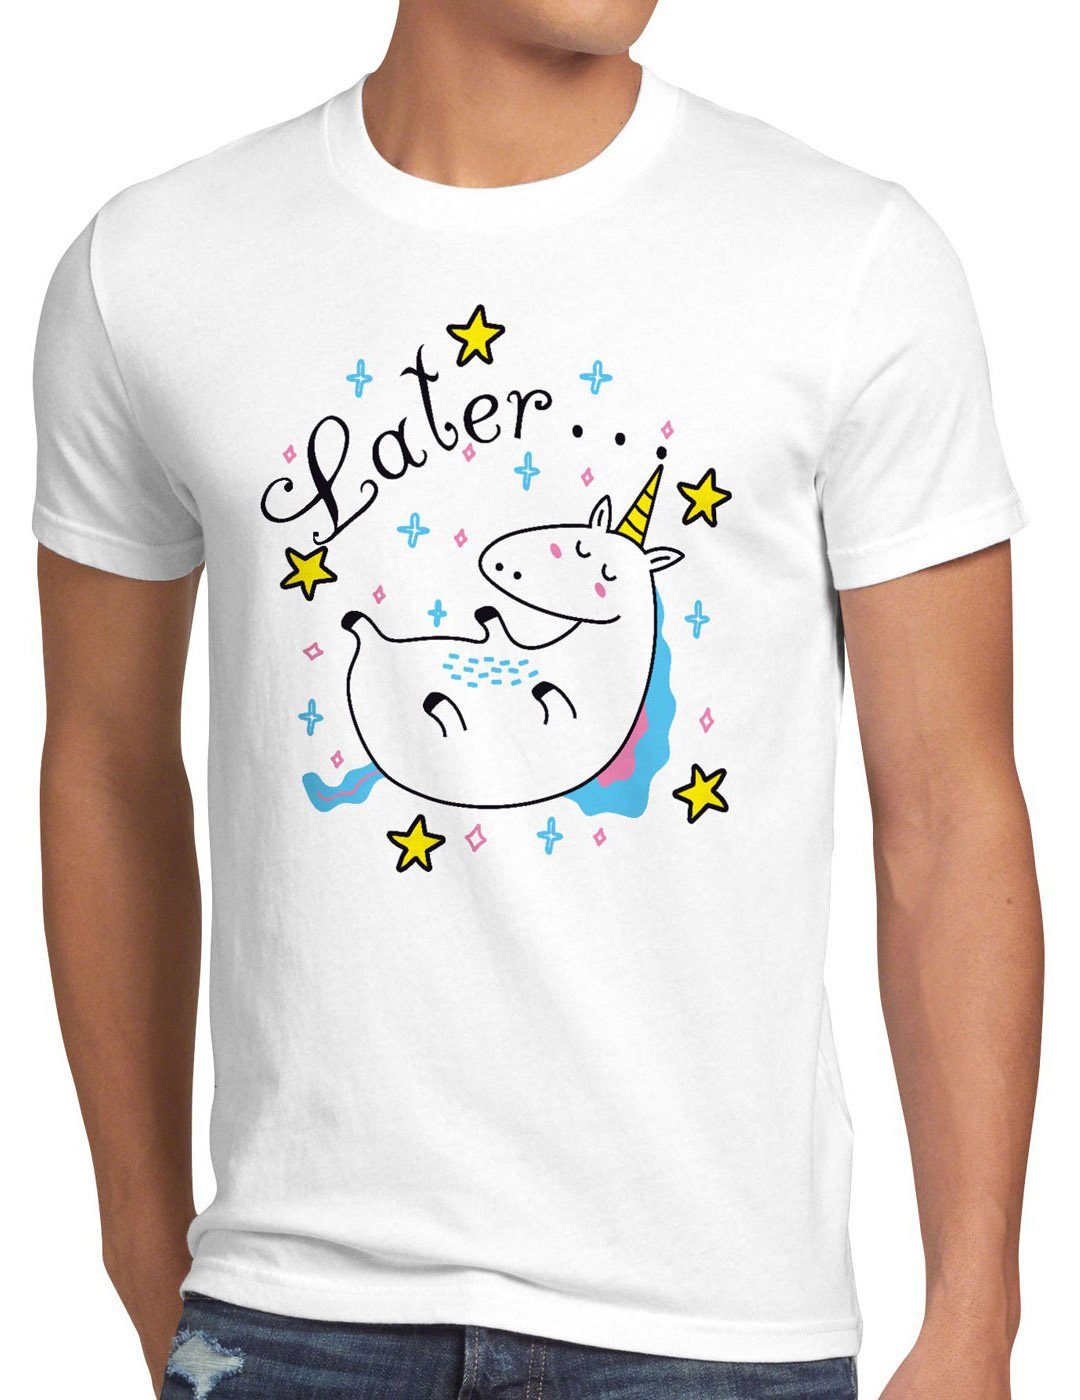 do Einhorn pferd fun später style3 funshirt Unicorn Print-Shirt Later Sleepy T-Shirt it weiß Herren top